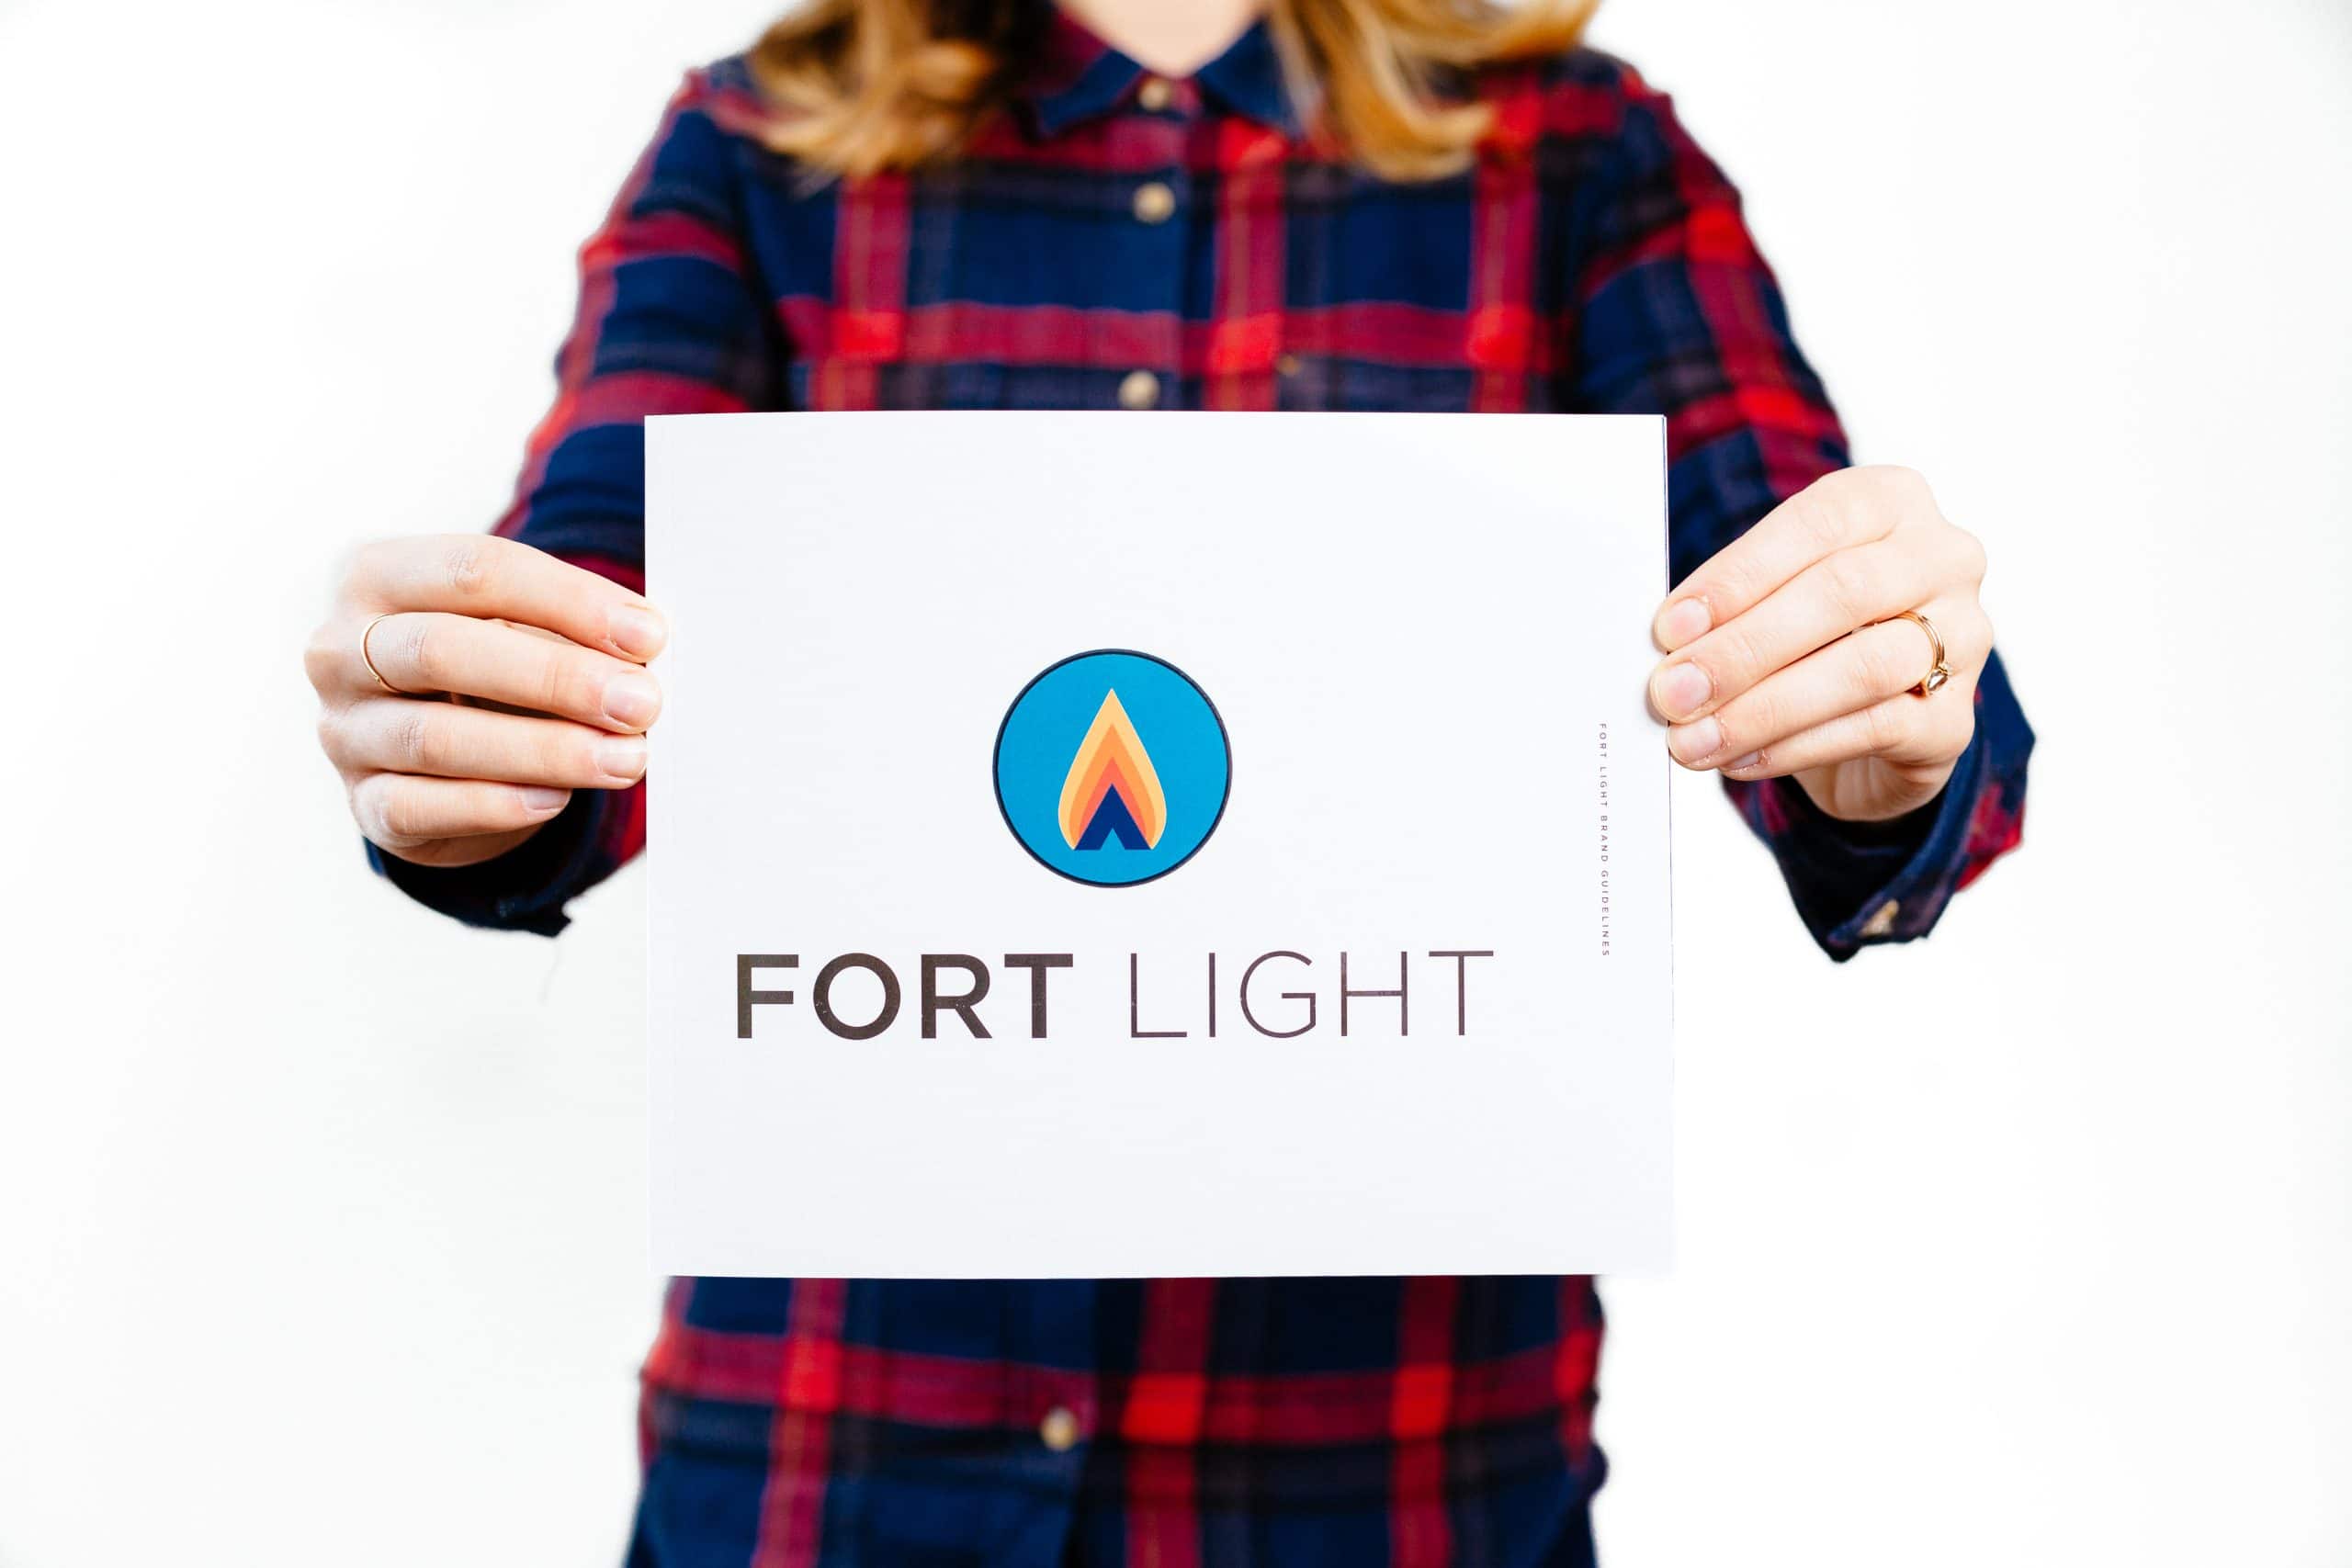 Fort Light